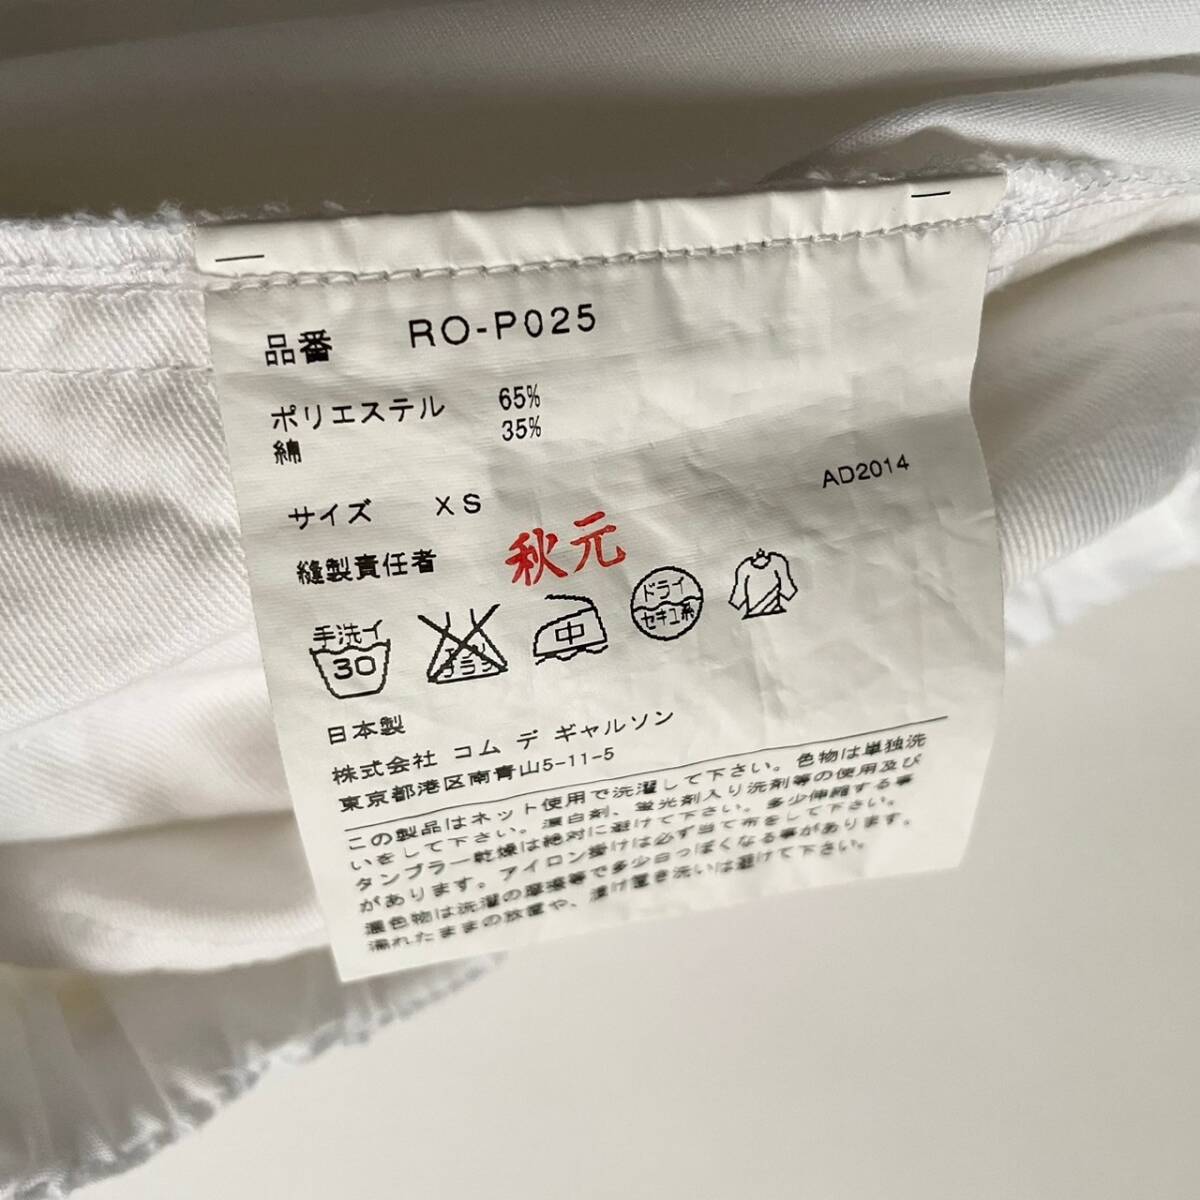 【美品】 COMME des GARCONS 日本製 コムデギャルソン AD2014 イージーパンツ ドロストパンツ ボトムス ゴム コムコム 無地 白 size XS skの画像10